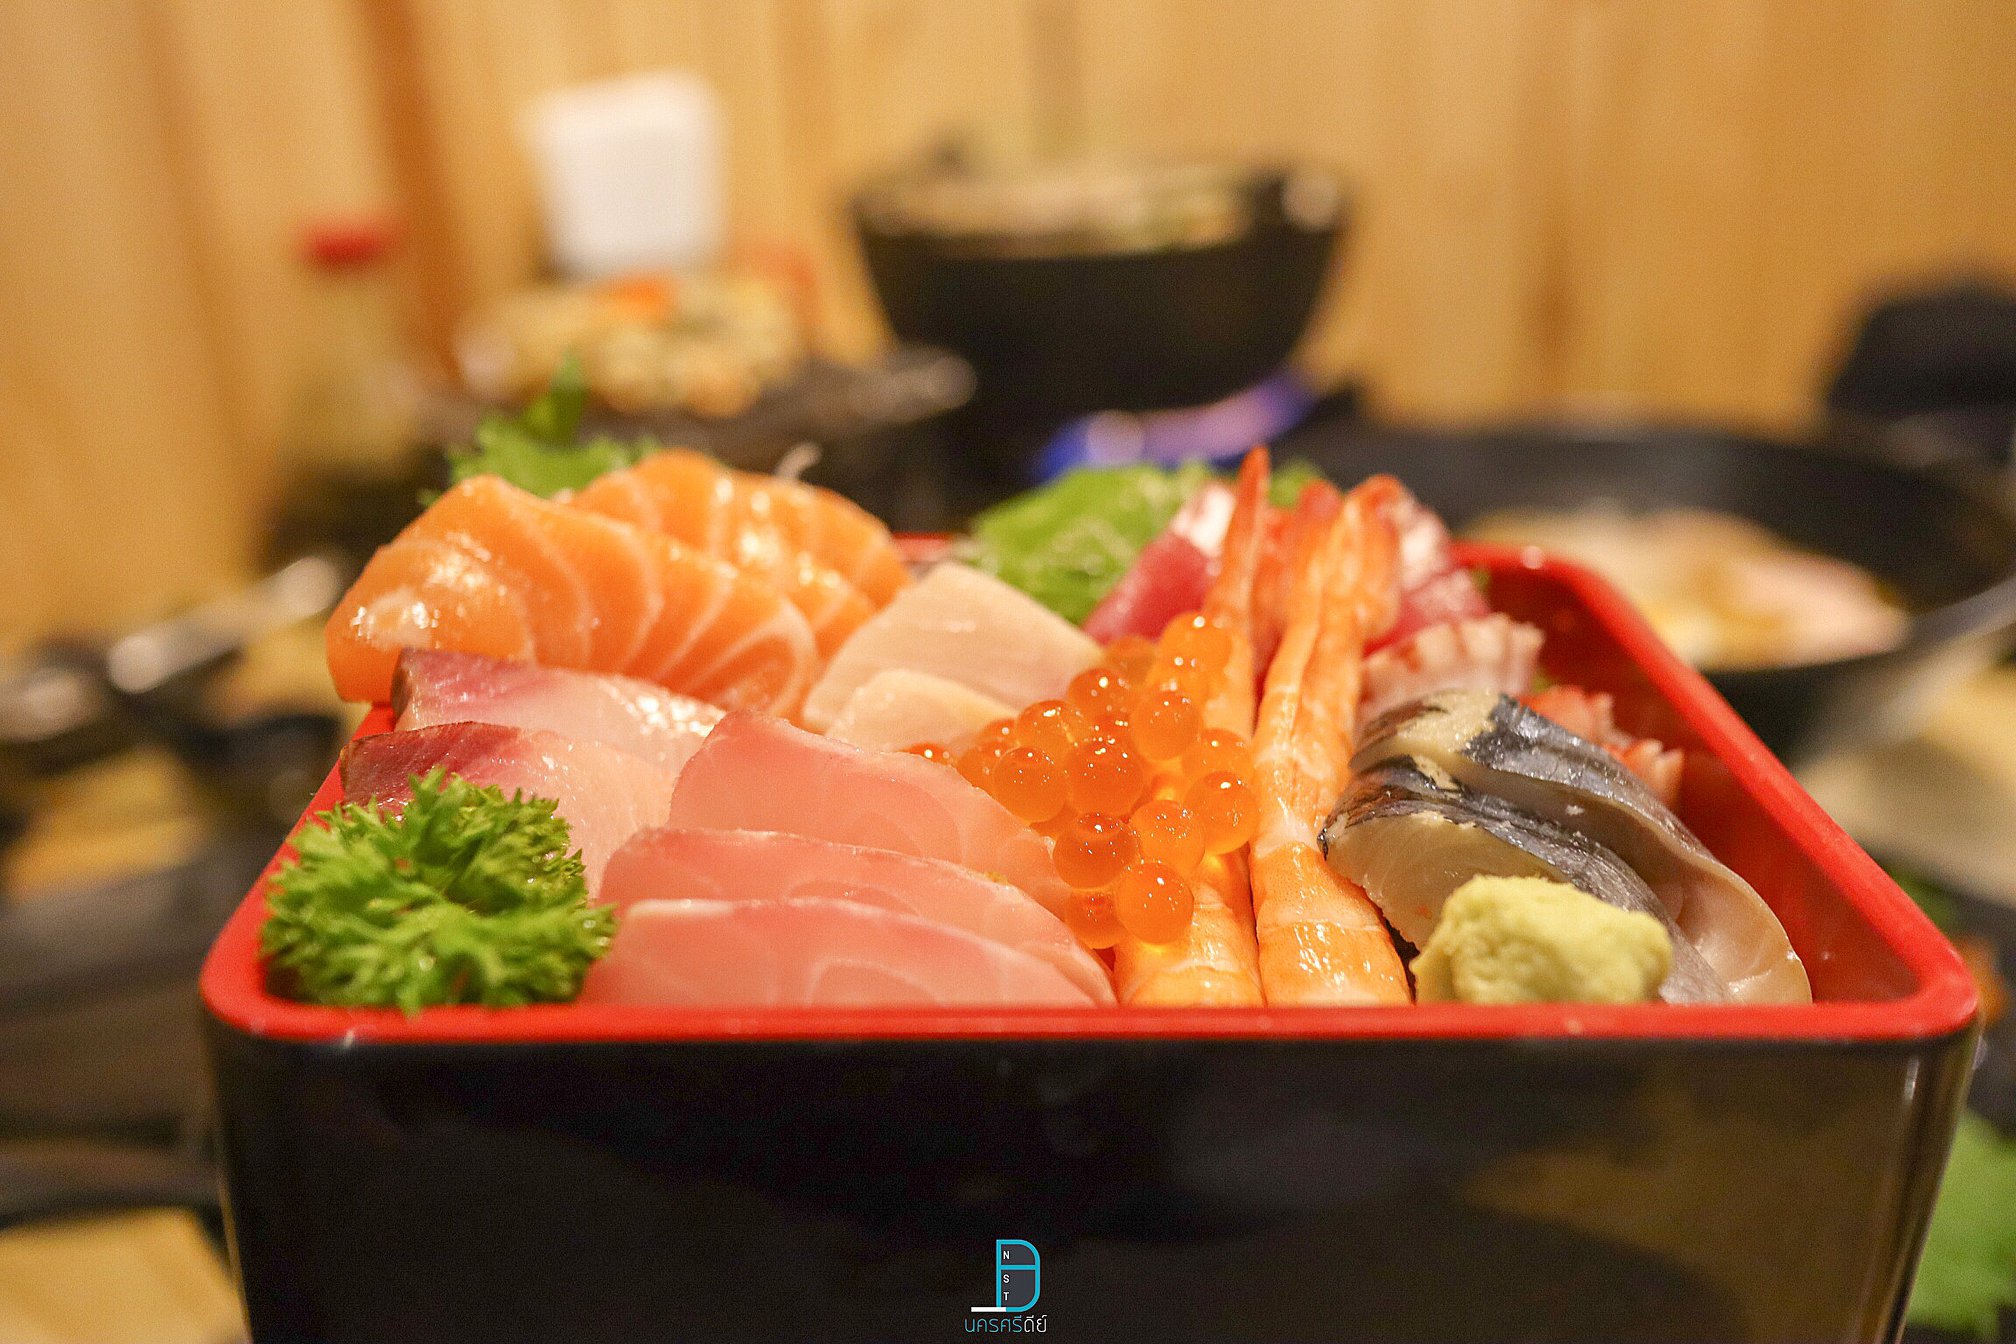   ร้านอาหารญี่ปุ่น,นครศรีธรรมราช,ของกิน,ร้านอร่อย,อำเภอเมือง,กินอะไรดี,ของหรอย,อาหารญี่ปุ่น